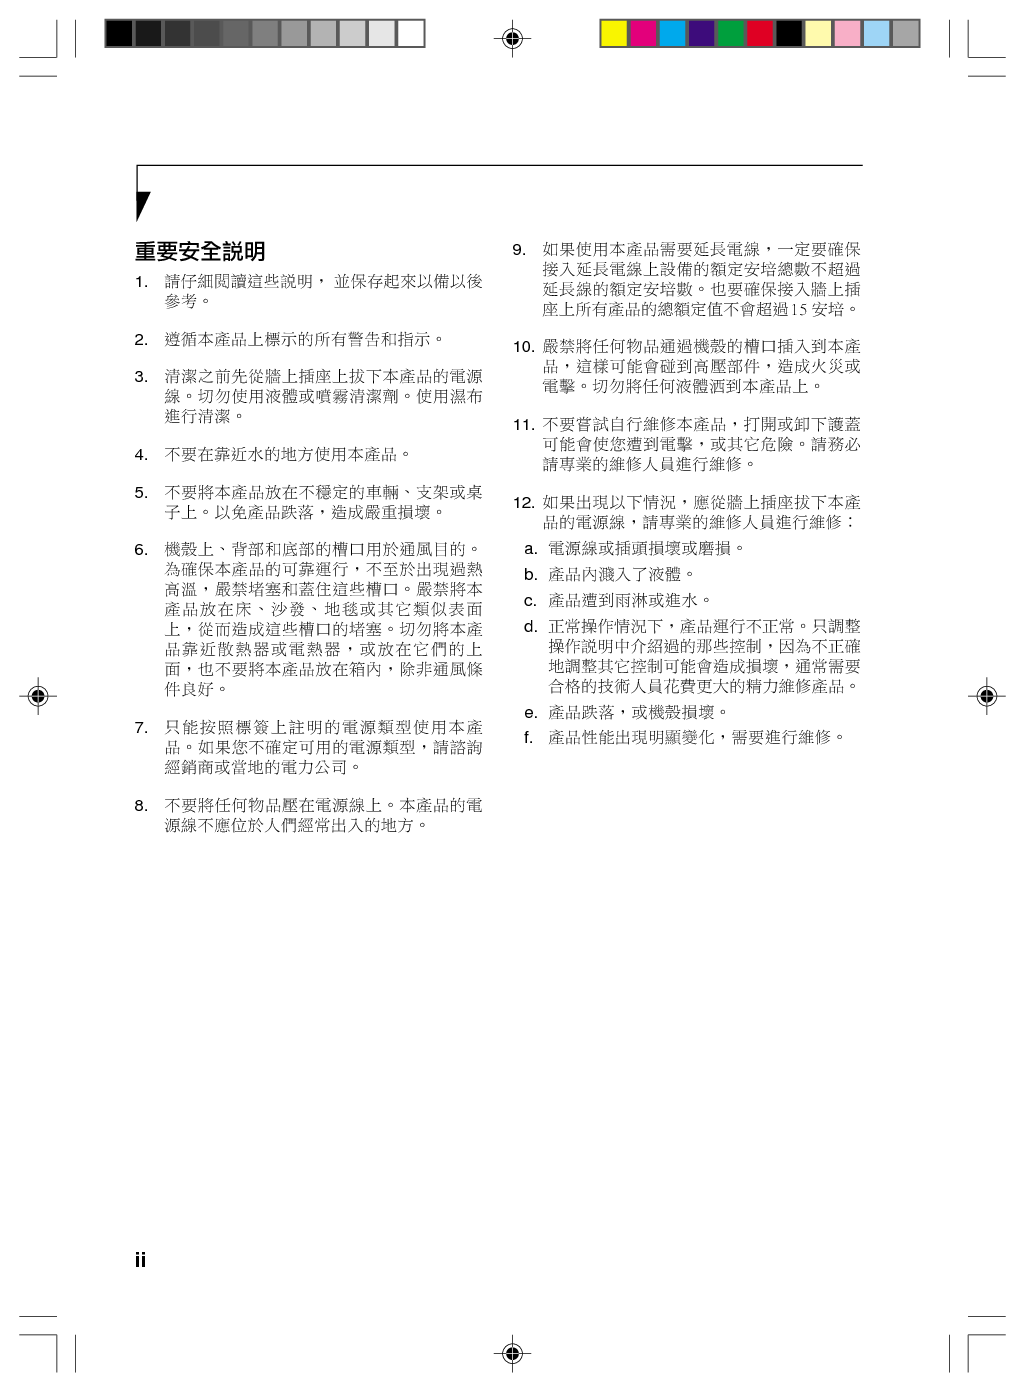 富士通 Fujitsu Lifebook P1610 繁体 使用说明书 第1页